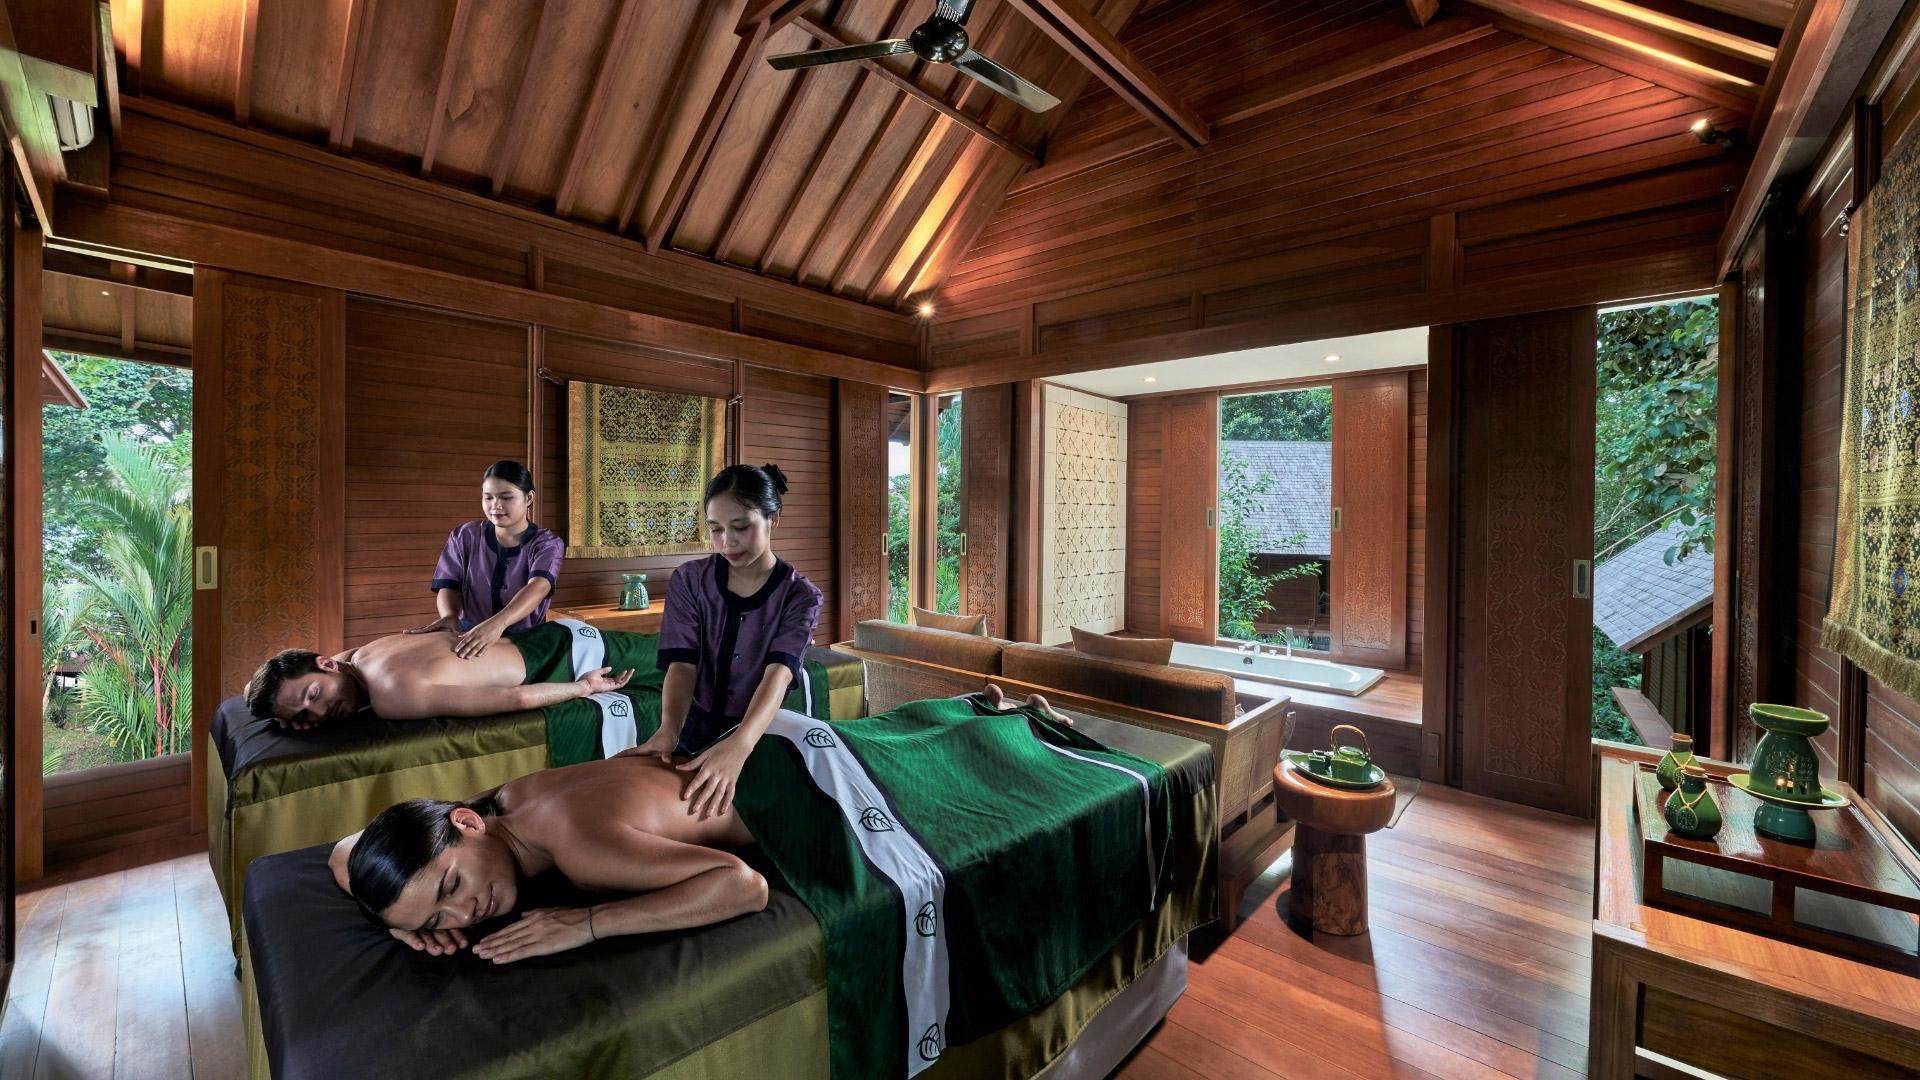 Bintan Island Luxury Massage Spa & Wellbeing by Banyan Tree